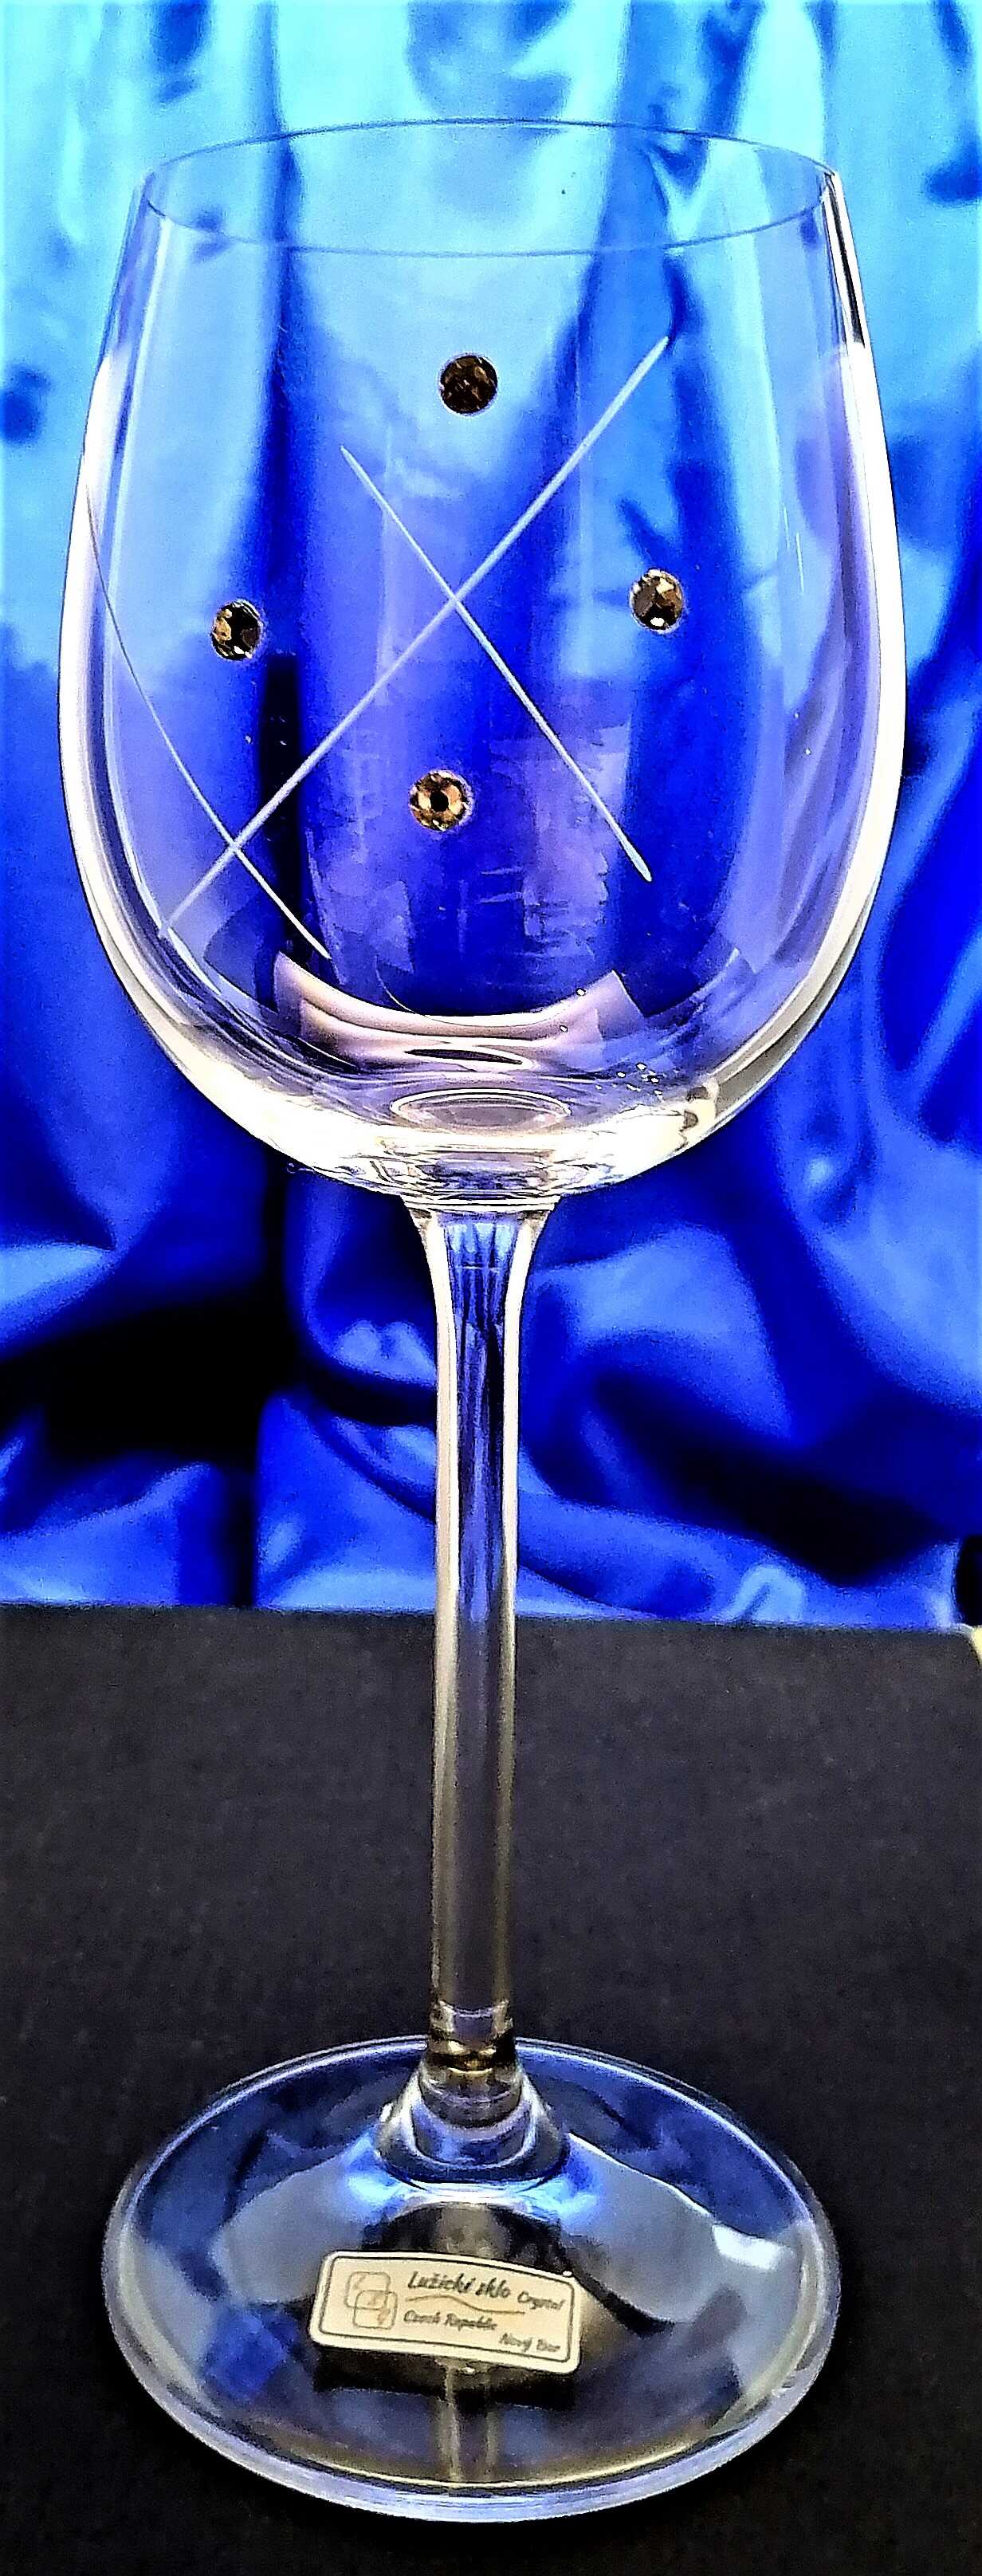 LsG-Crystal Skleničky na bílé víno 24 x Swarovski krystal ručně ryté broušené dekor Karla dárkové balení satén Erika-9718 260 ml 6 Ks.